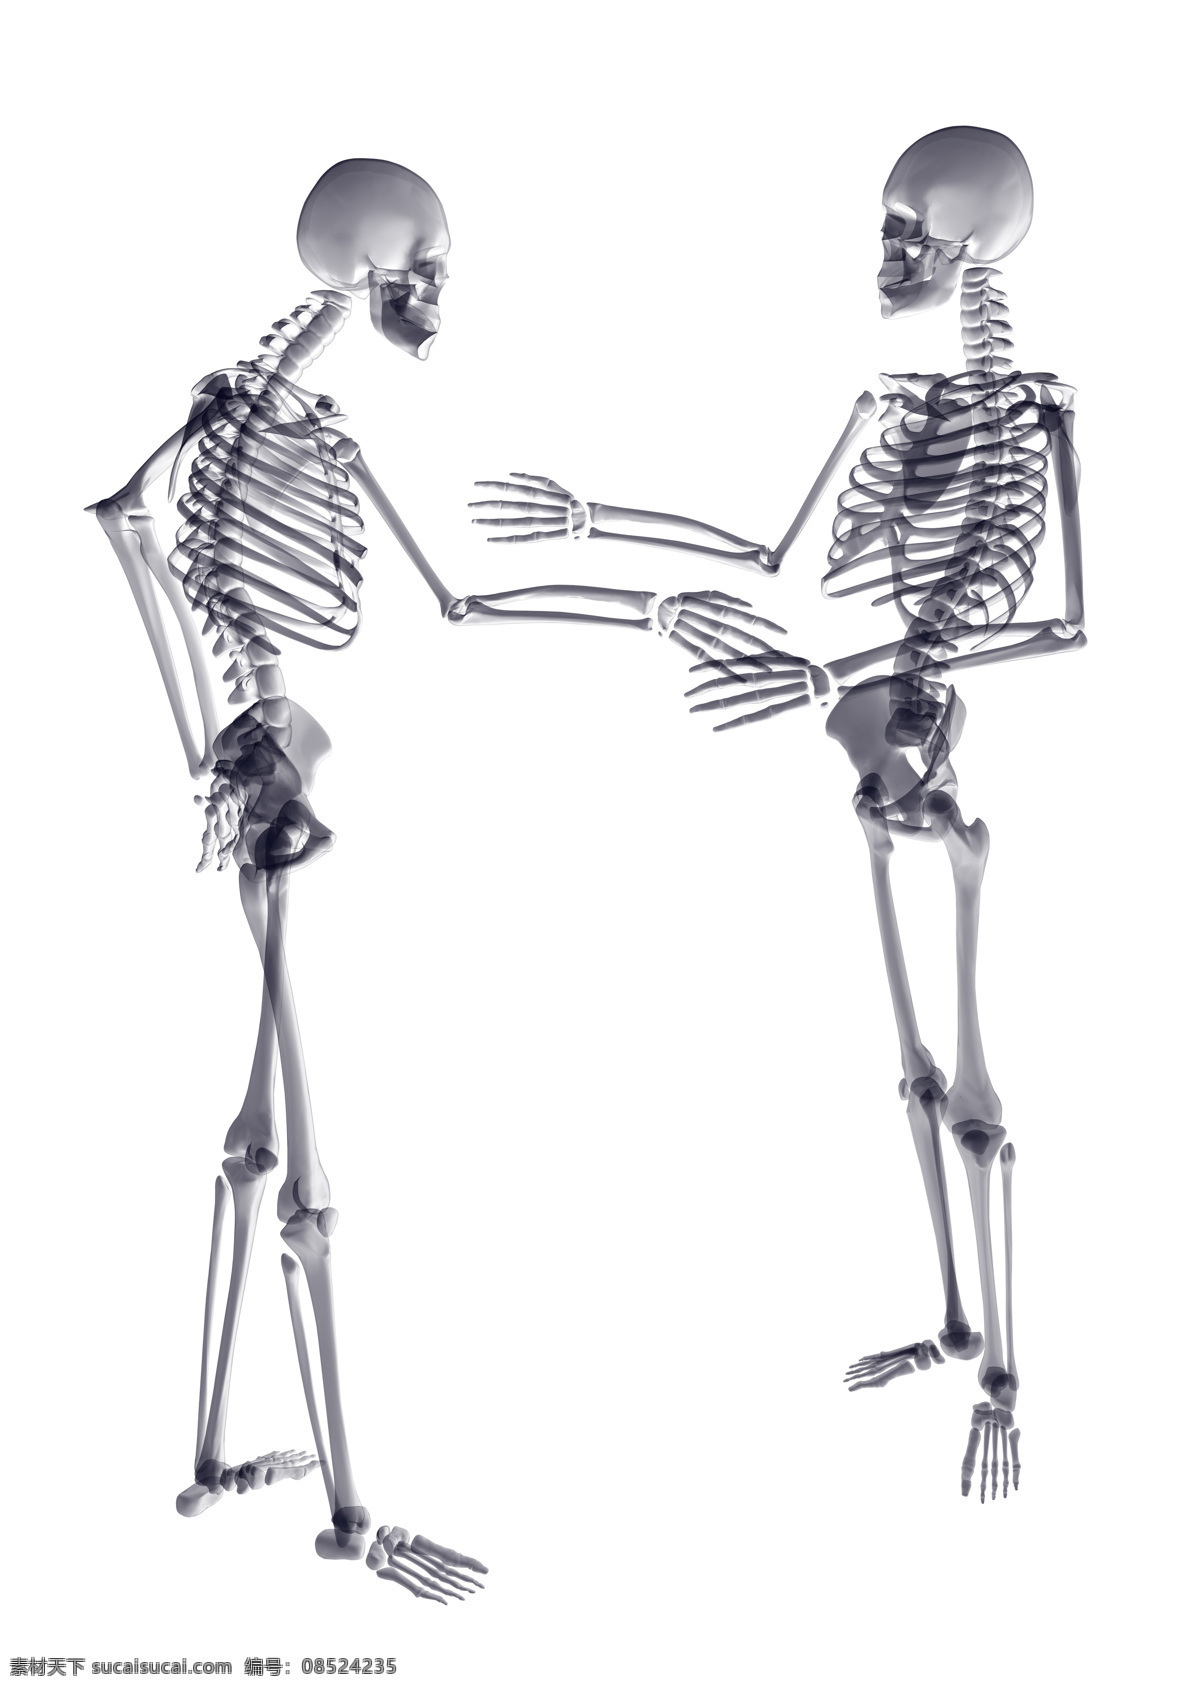 人体骨骼 人体 肢体 模型 效果图 3dmax 医学研究 医学人体 透视人体 人体结构 关节 医学 3d设计 其他模型 生物世界 其他生物